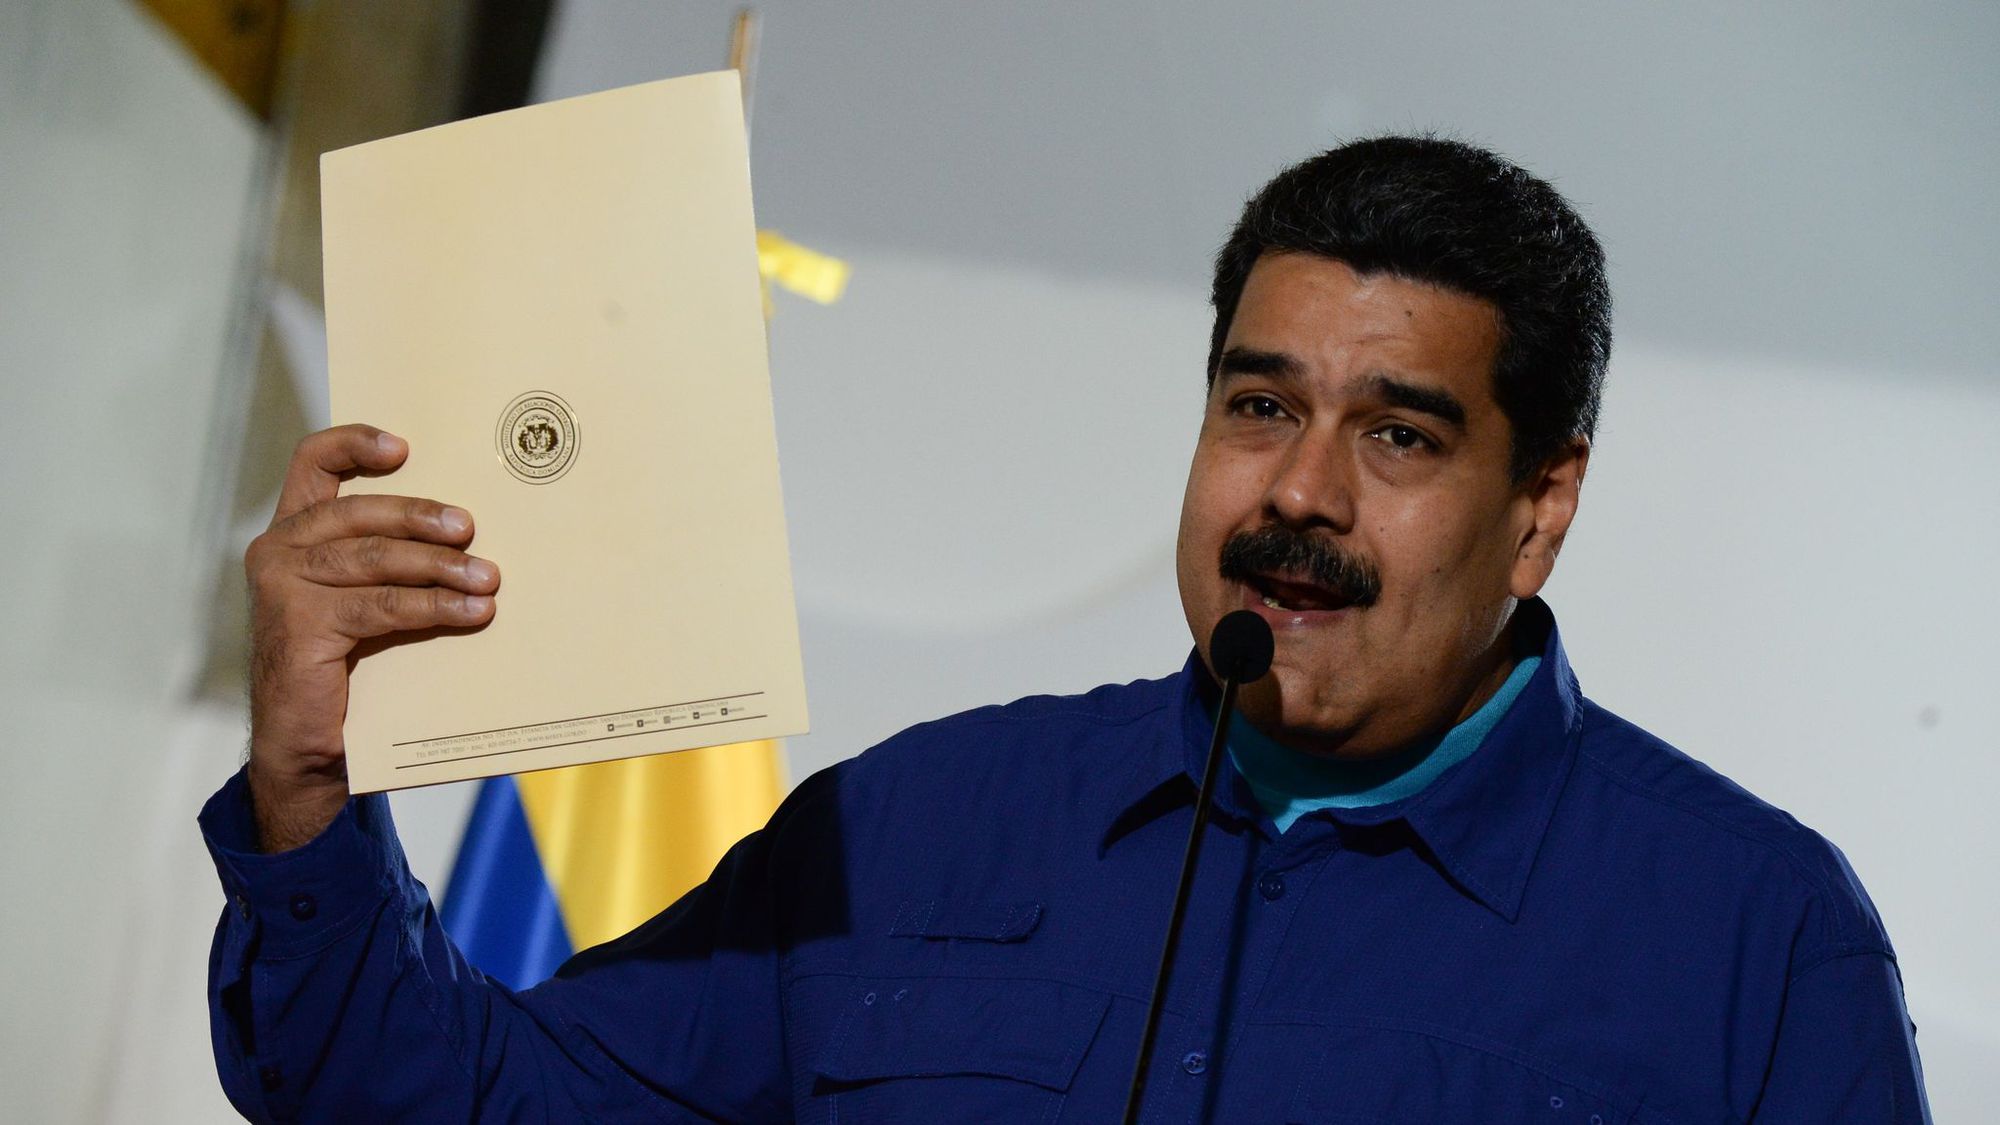 Venezuela: l'élection présidentielle aura lieu le 22 avril